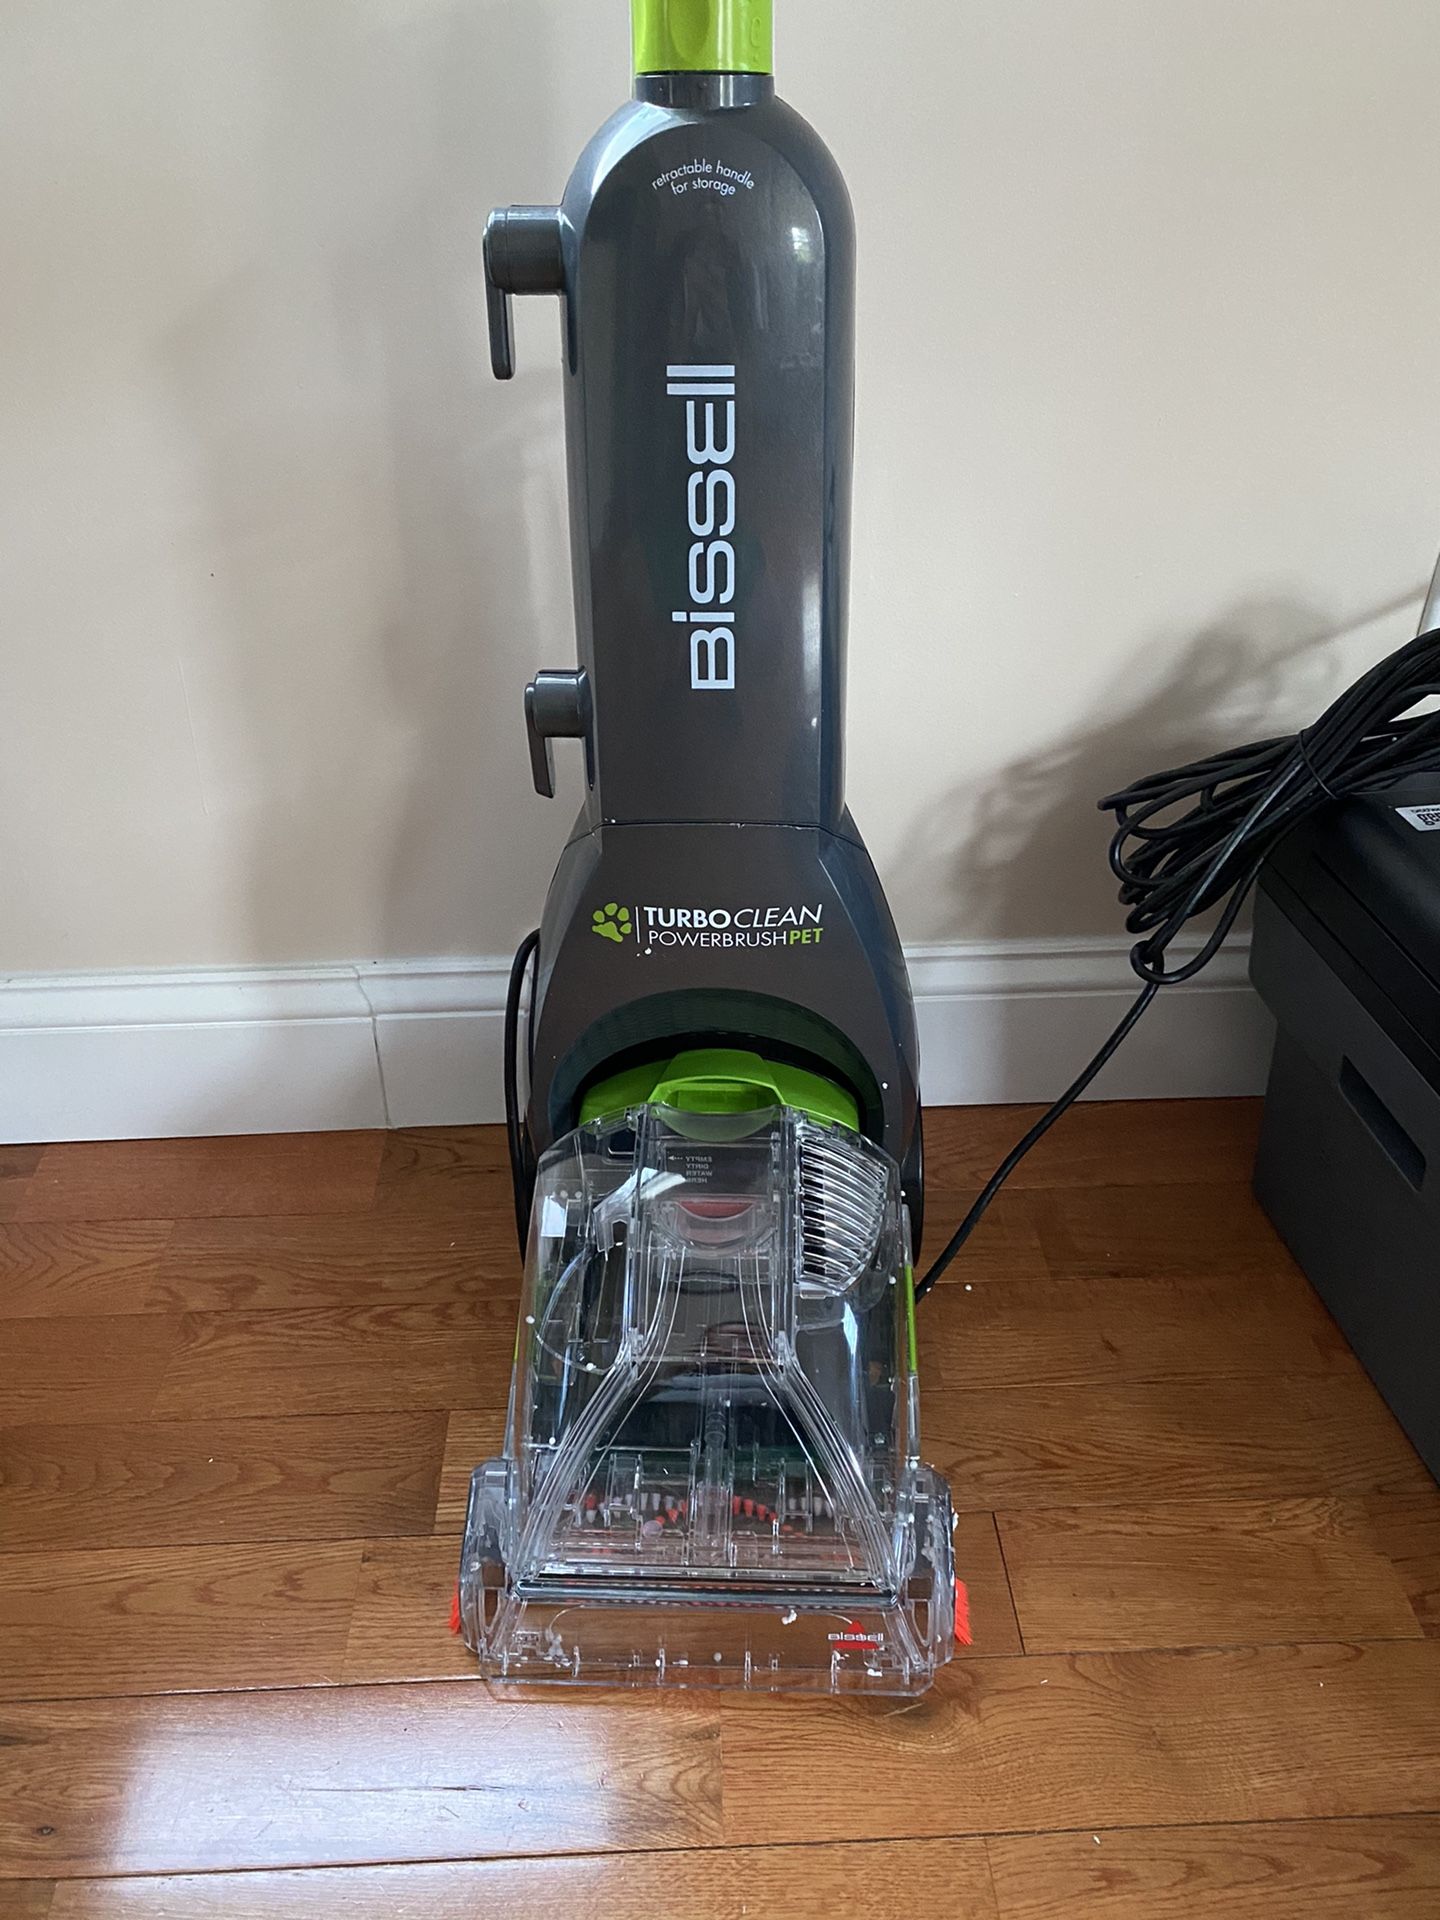 Bissell Turbo clean vacuum